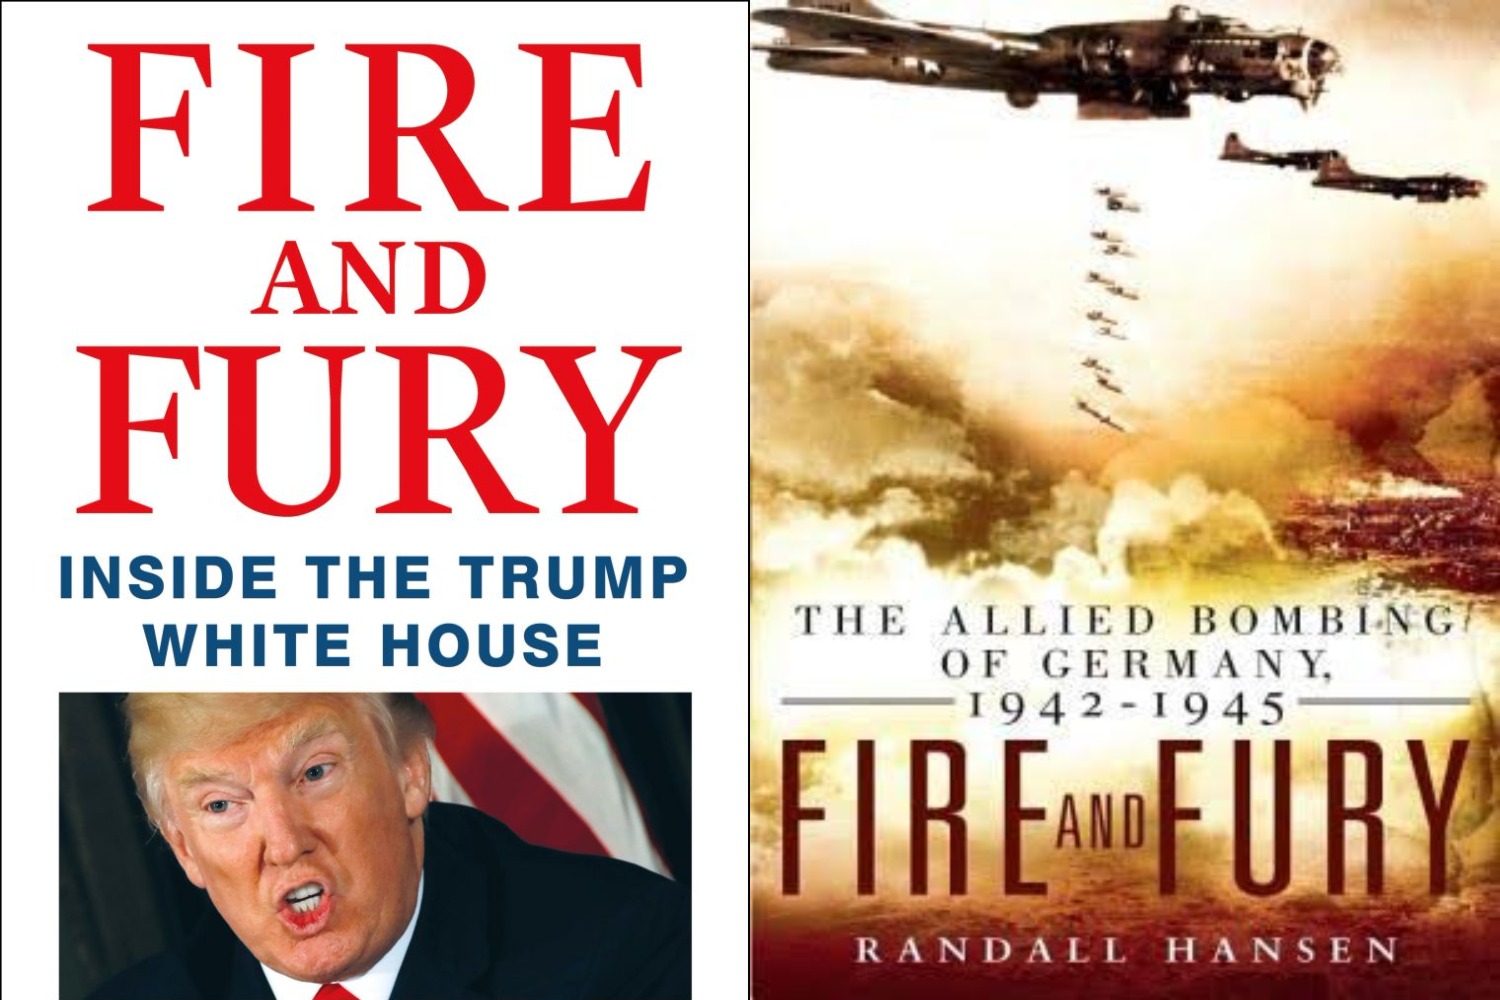 Akkora siker a Trumpról szóló botránykönyv, hogy még egy azonos című történelmi munkából is bestseller lett